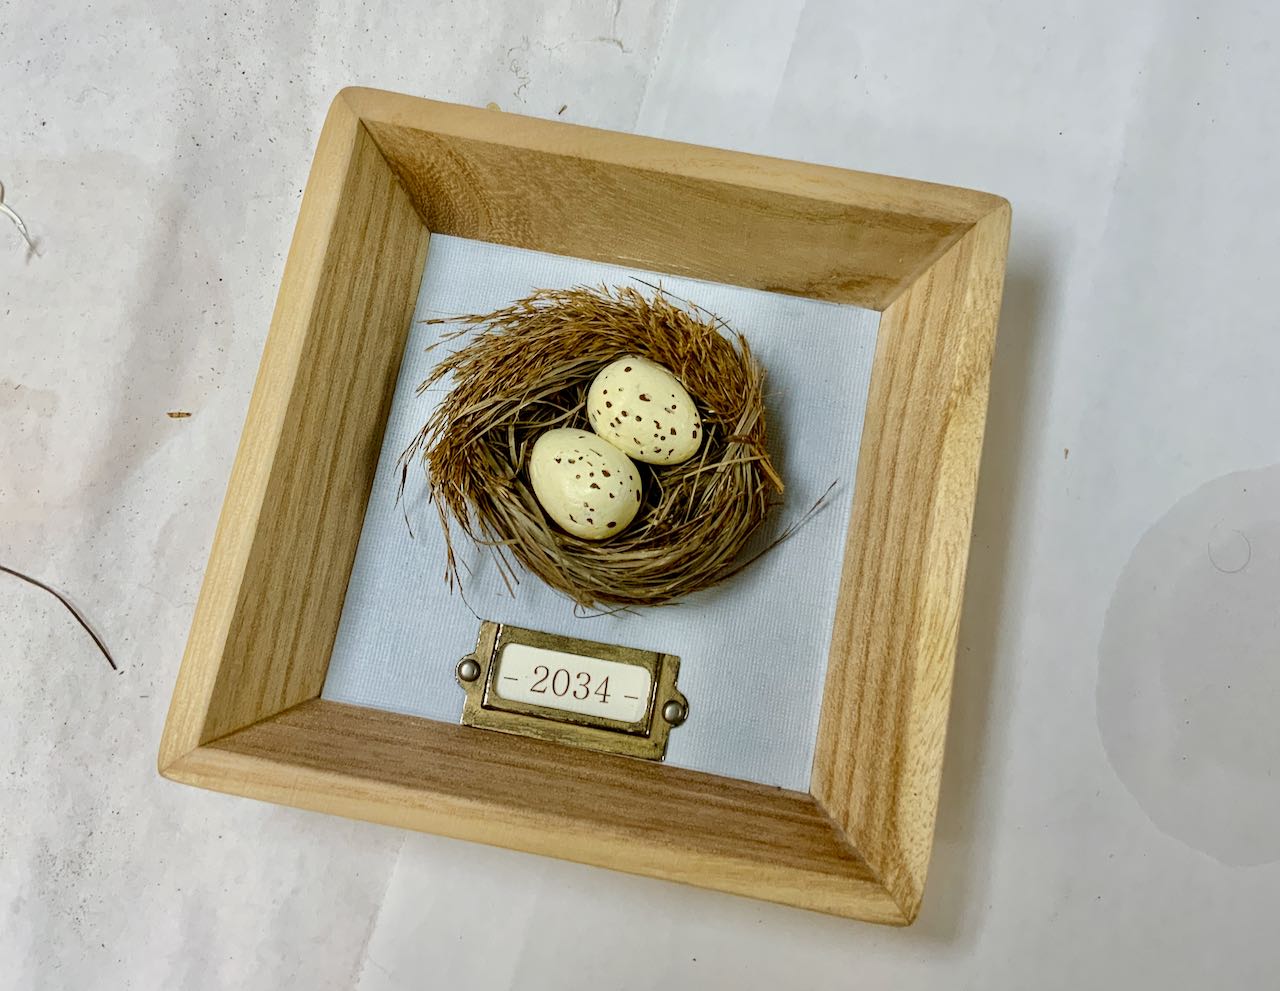 Finished framed nest on work table